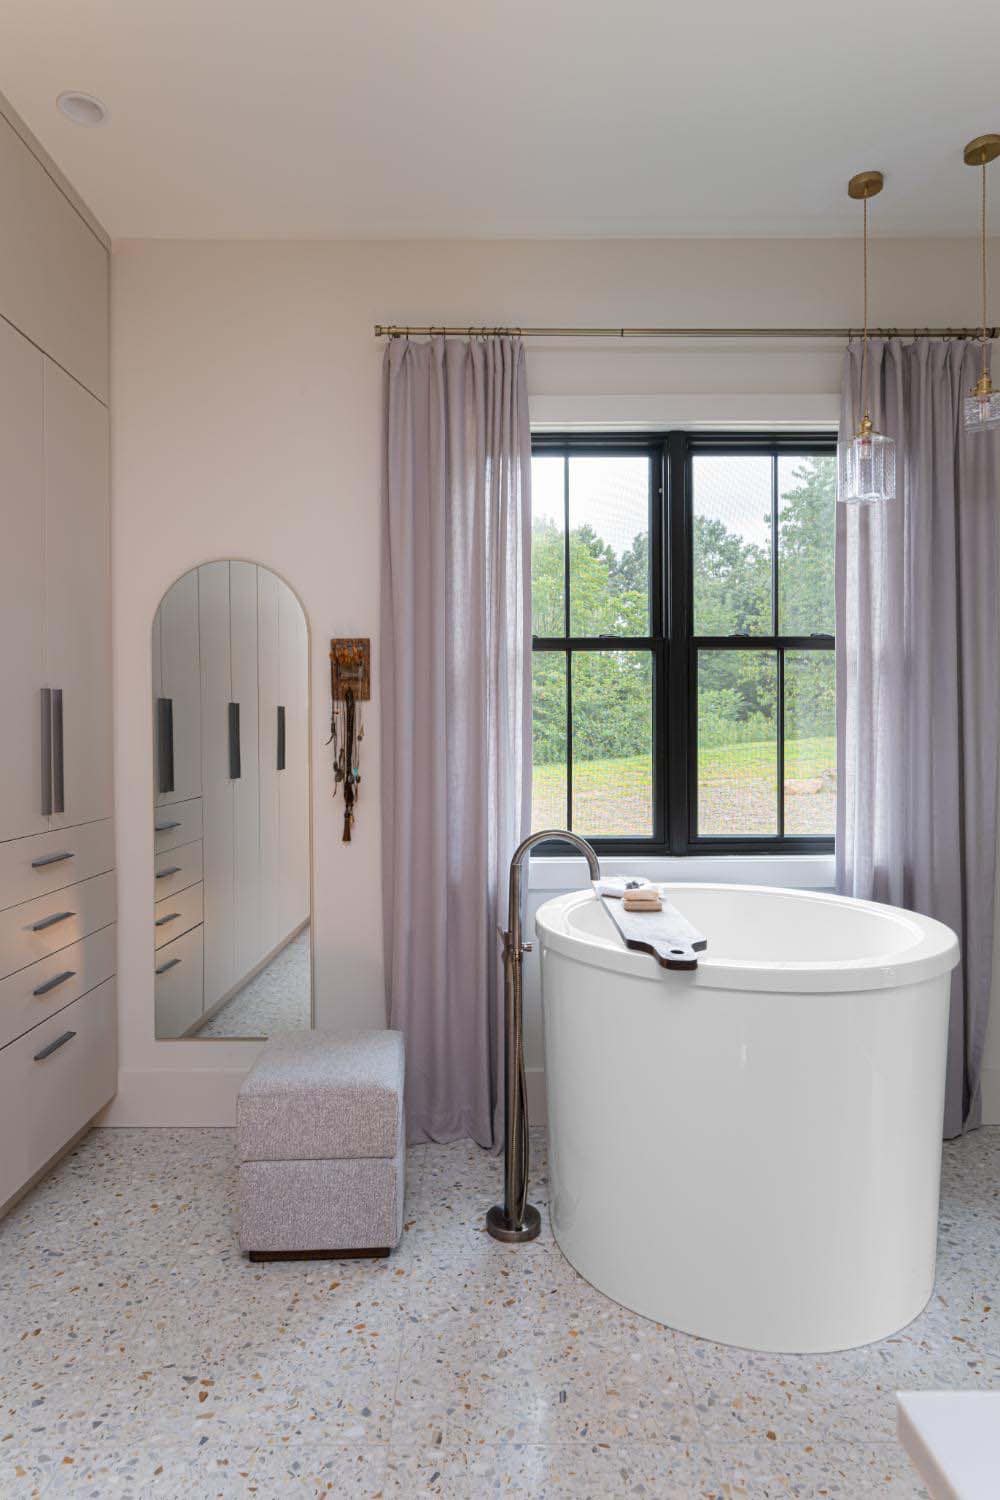 English modern style bathroom with a soaking tub